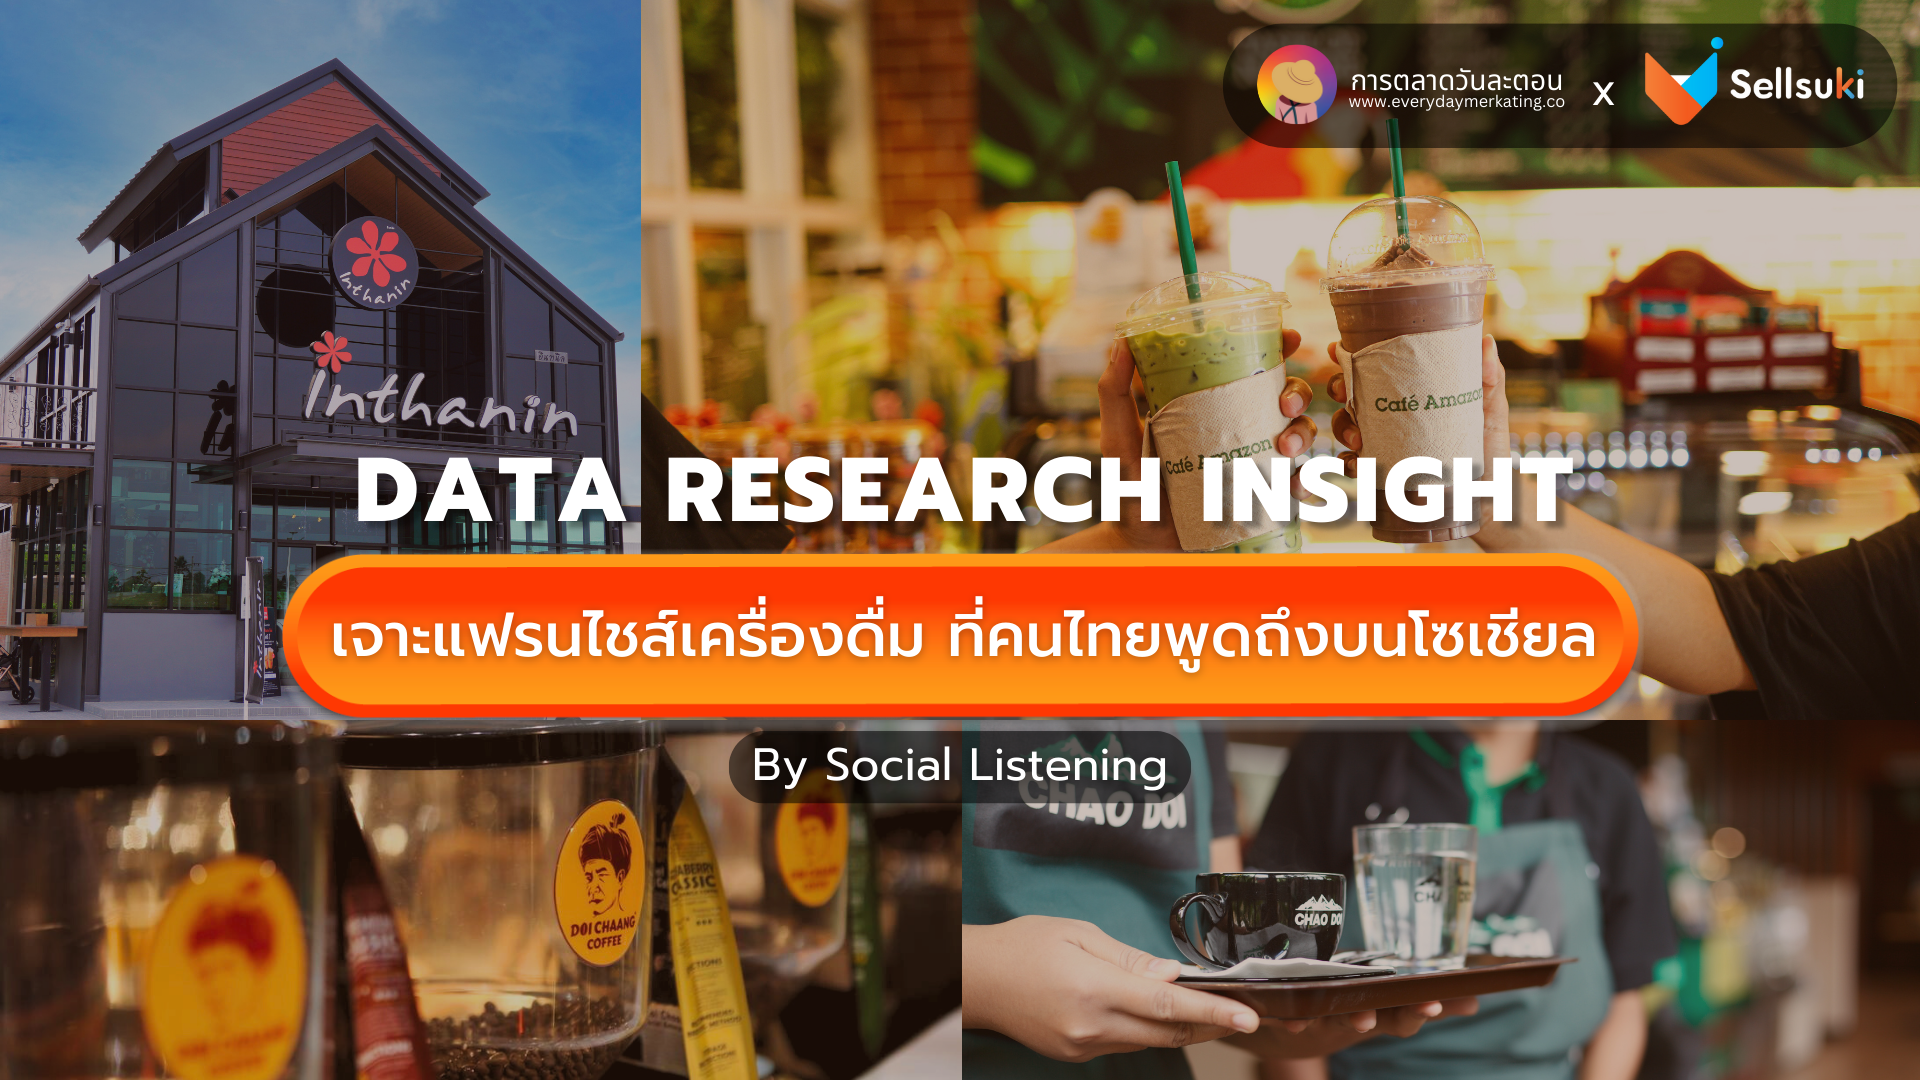 ดาวน์โหลดฟรี! Data Research Insight ธุรกิจ แฟรนไชส์ เครื่องดื่มในไทย